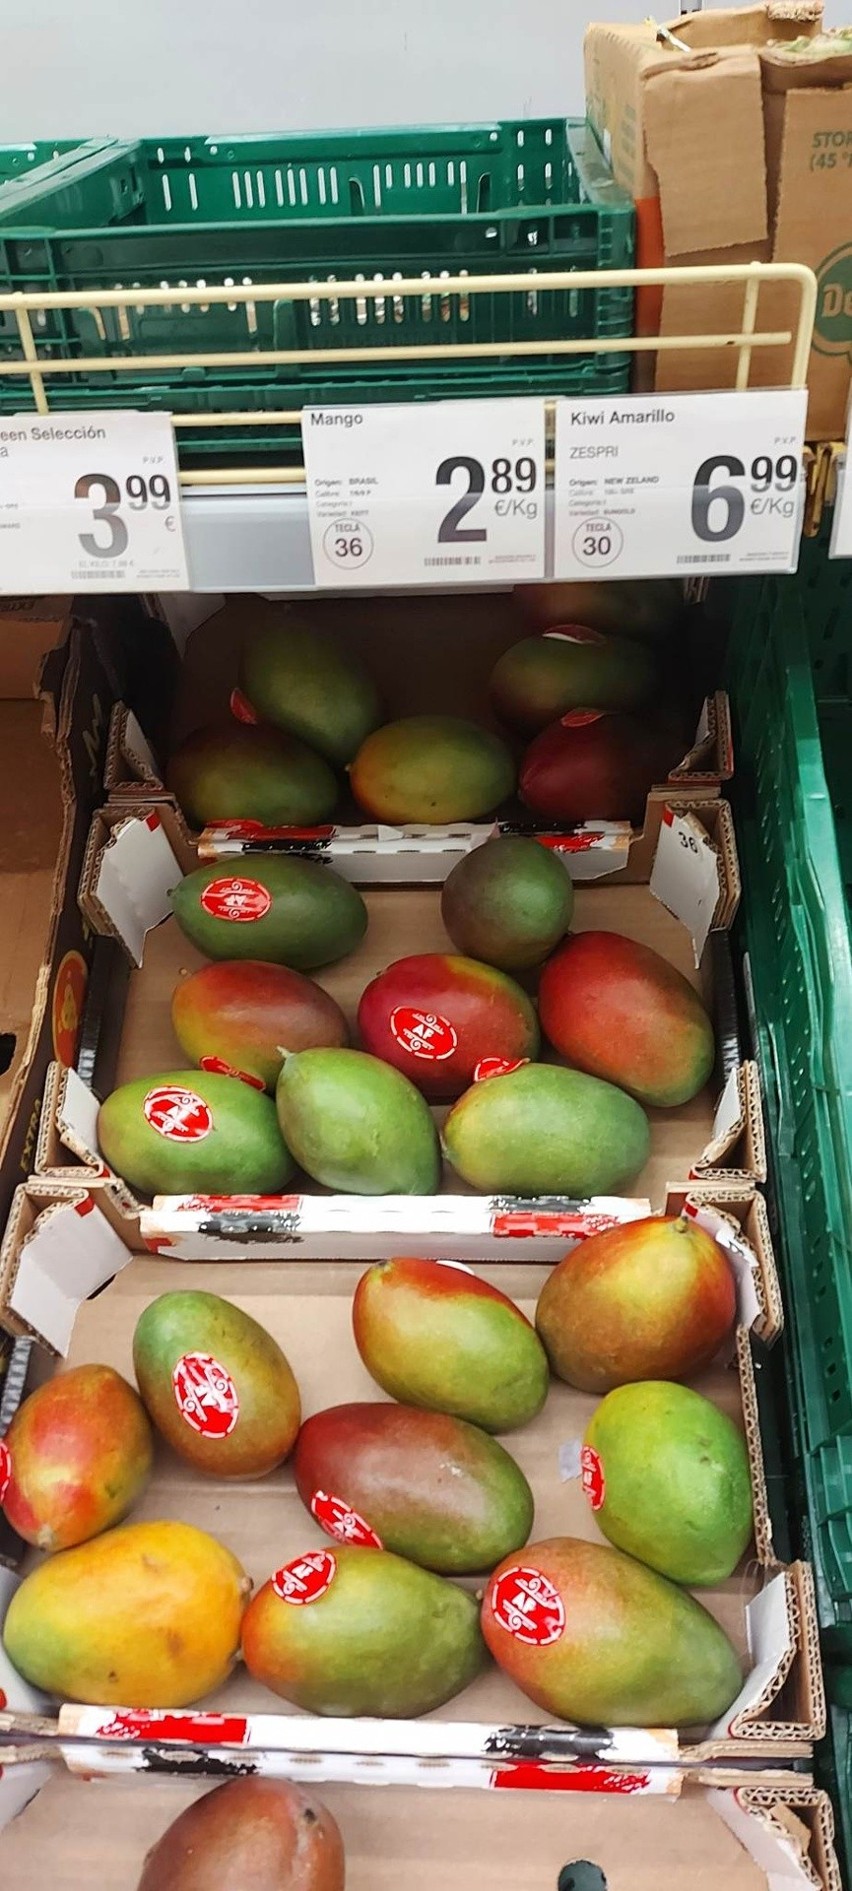 Mango 2,89 euro za kilogram